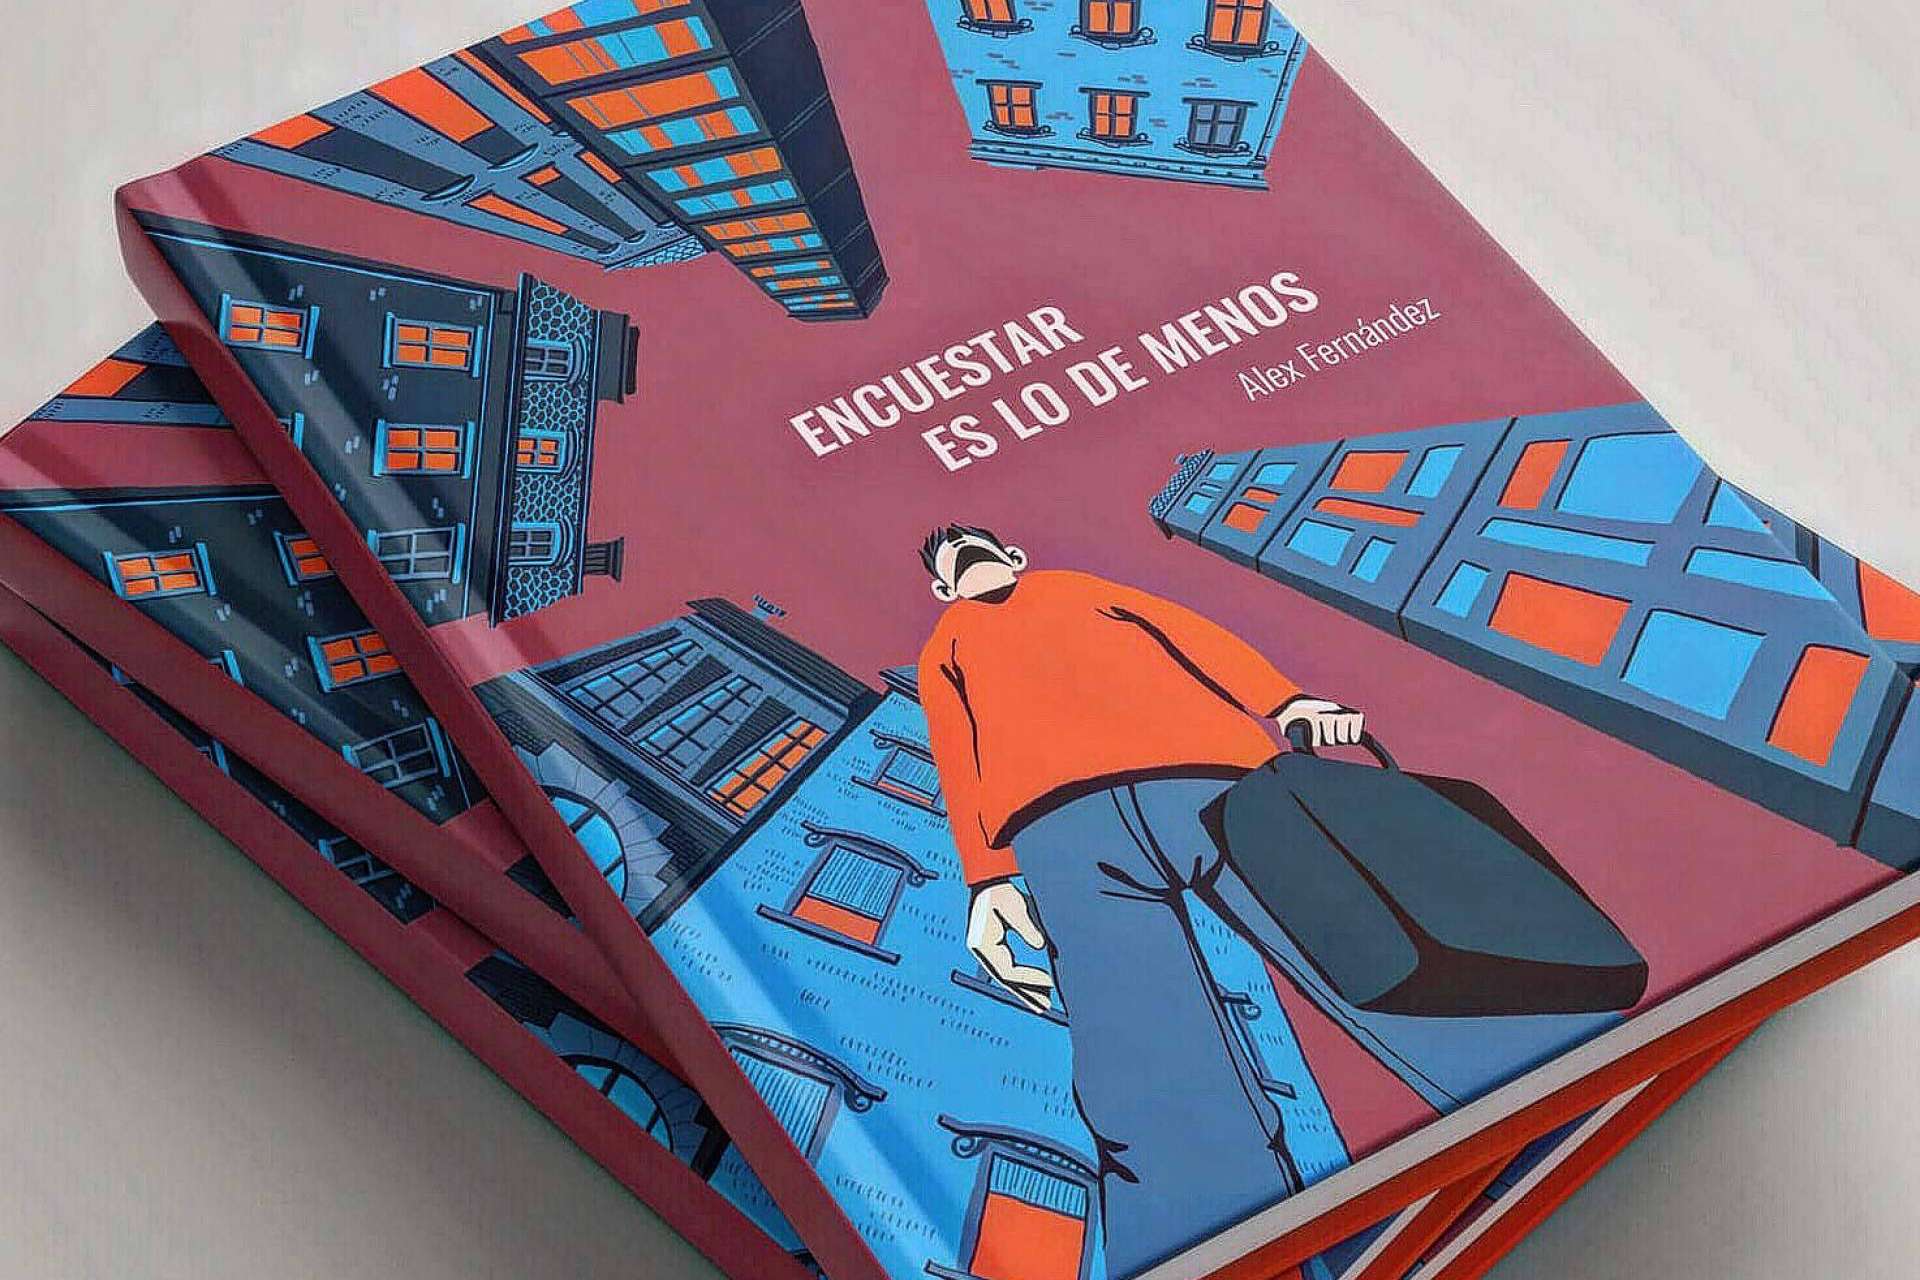 La novela corta que habla sobre la vida de un encuestador en los barrios de la ciudad de Madrid